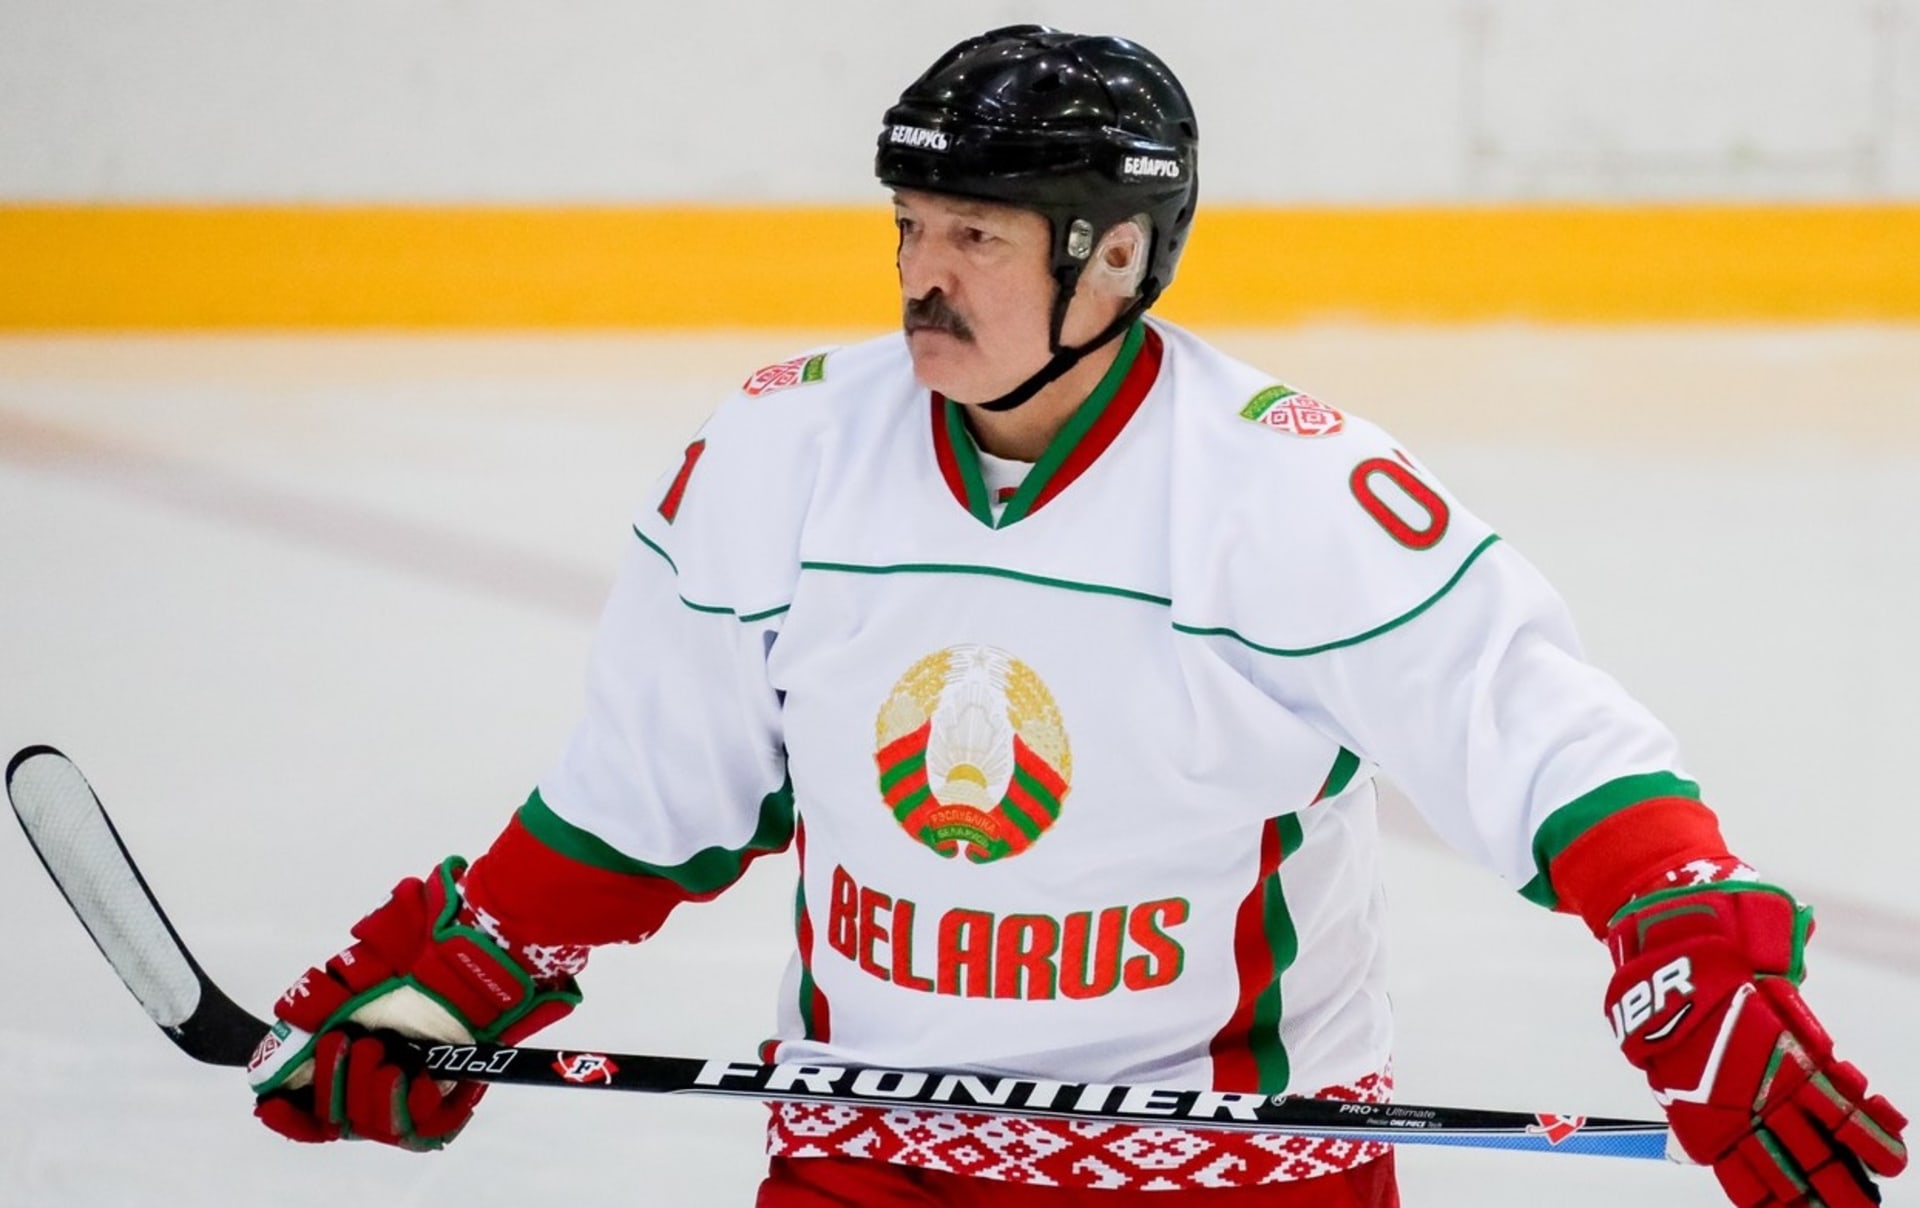 Alexandr Lukašenko je velkým hokejovým nadšencem. Leckdo usiluje o to, aby se běloruský prezident nedočkal mistrovství světa ve své zemi.